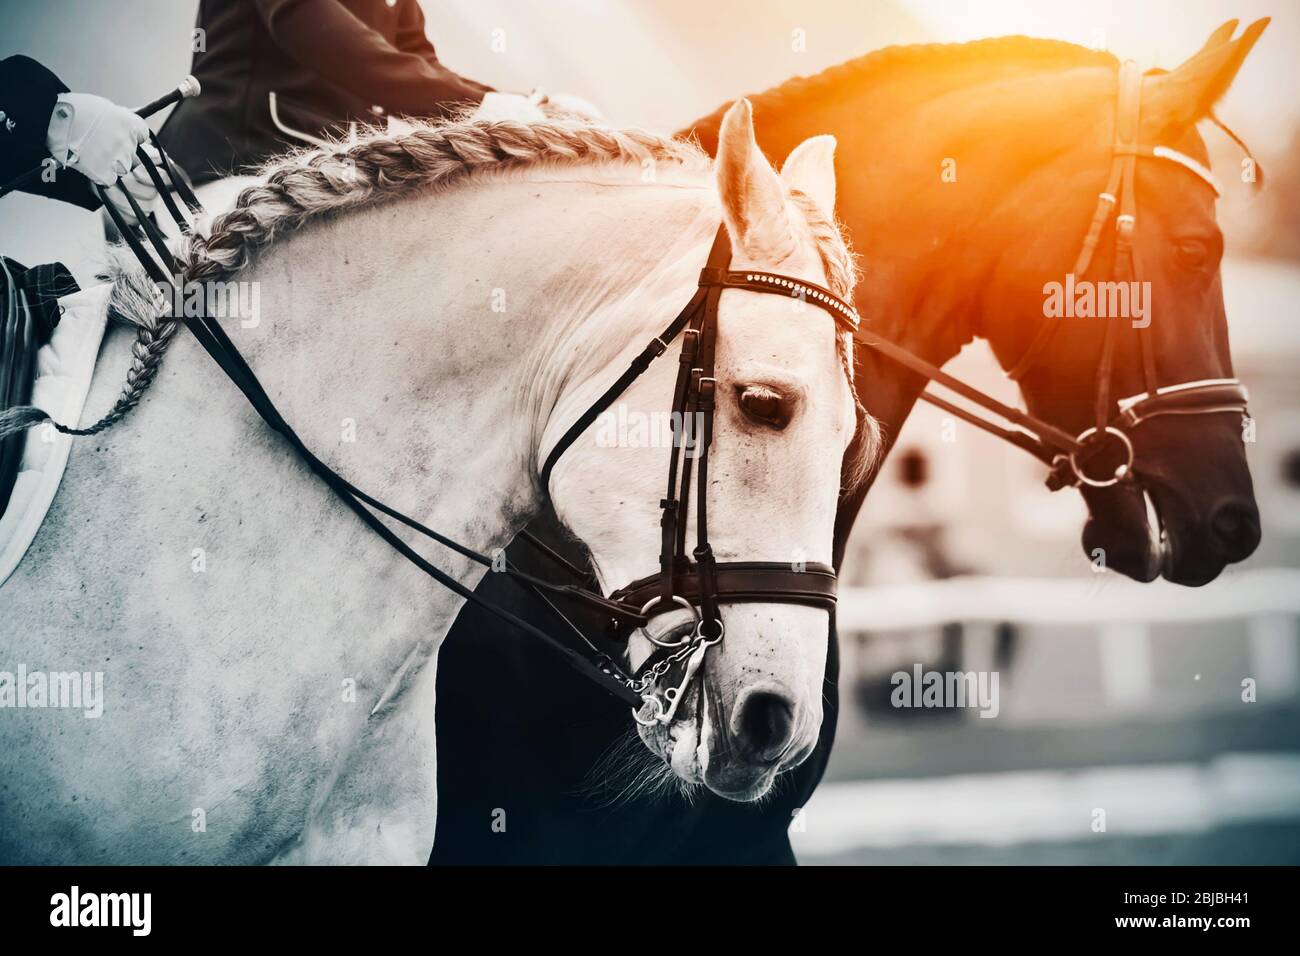 Zwei Pferde, ein weißes und ein schwarzes Pferd, galoppieren, beleuchtet im  hellen Sonnenlicht. Wettbewerbskampf Stockfotografie - Alamy